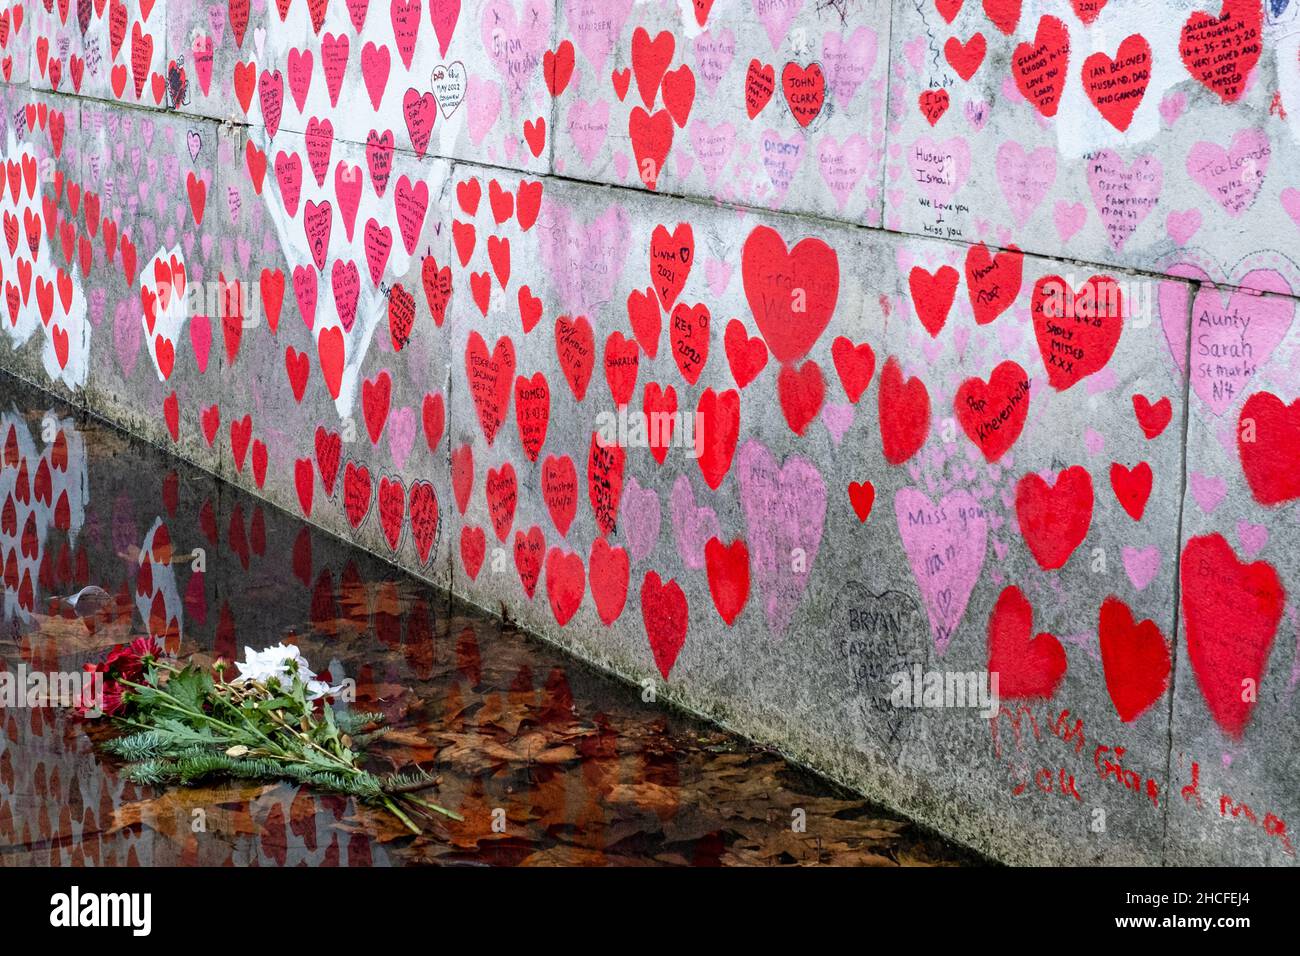 Londons National Covid Memorial Wall mit verfallenden Blumen im Vordergrund. Sowohl die Herzen als auch die Blumen haben sich im Laufe der Zeit verschlechtert. Stockfoto